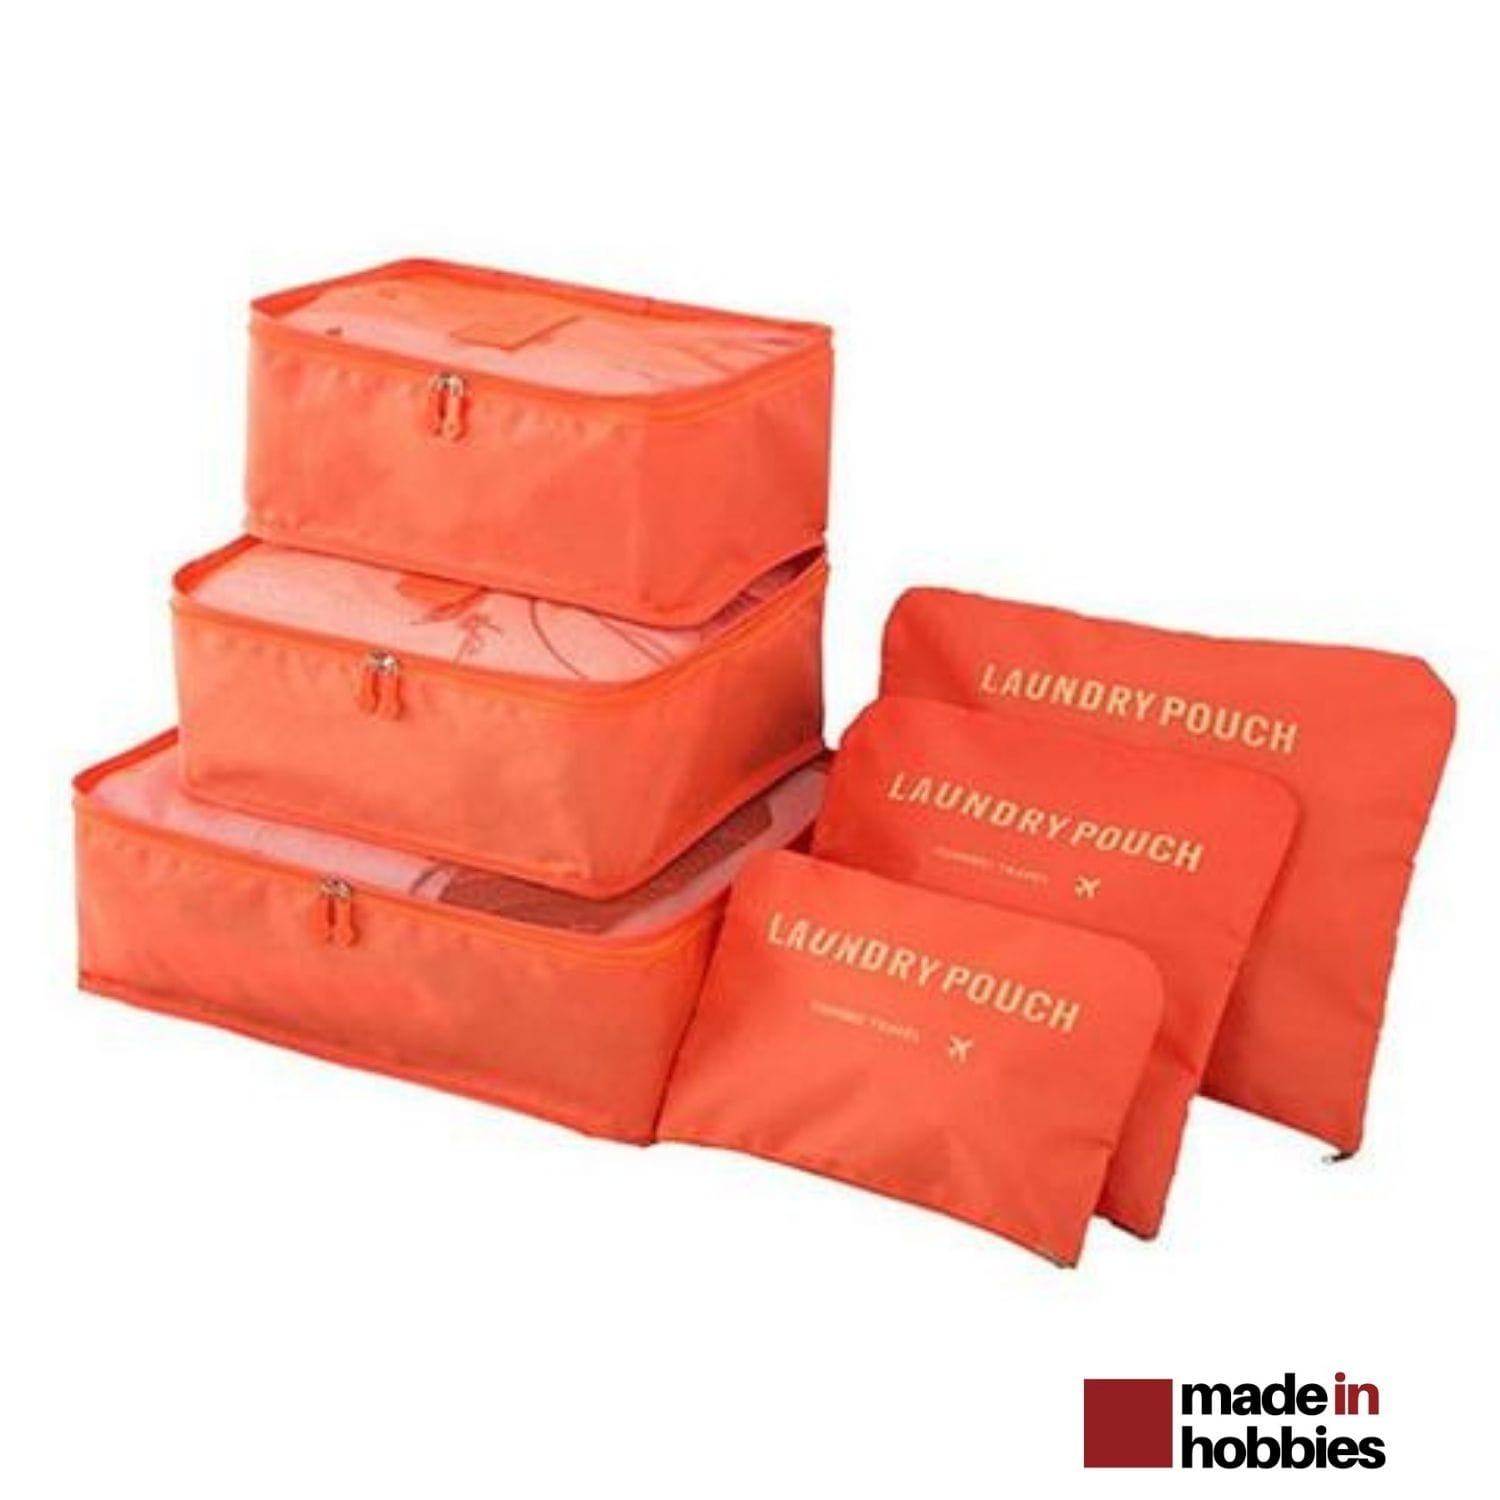 8 Set Emballage de voyage Cube, sac de rangement pliable léger